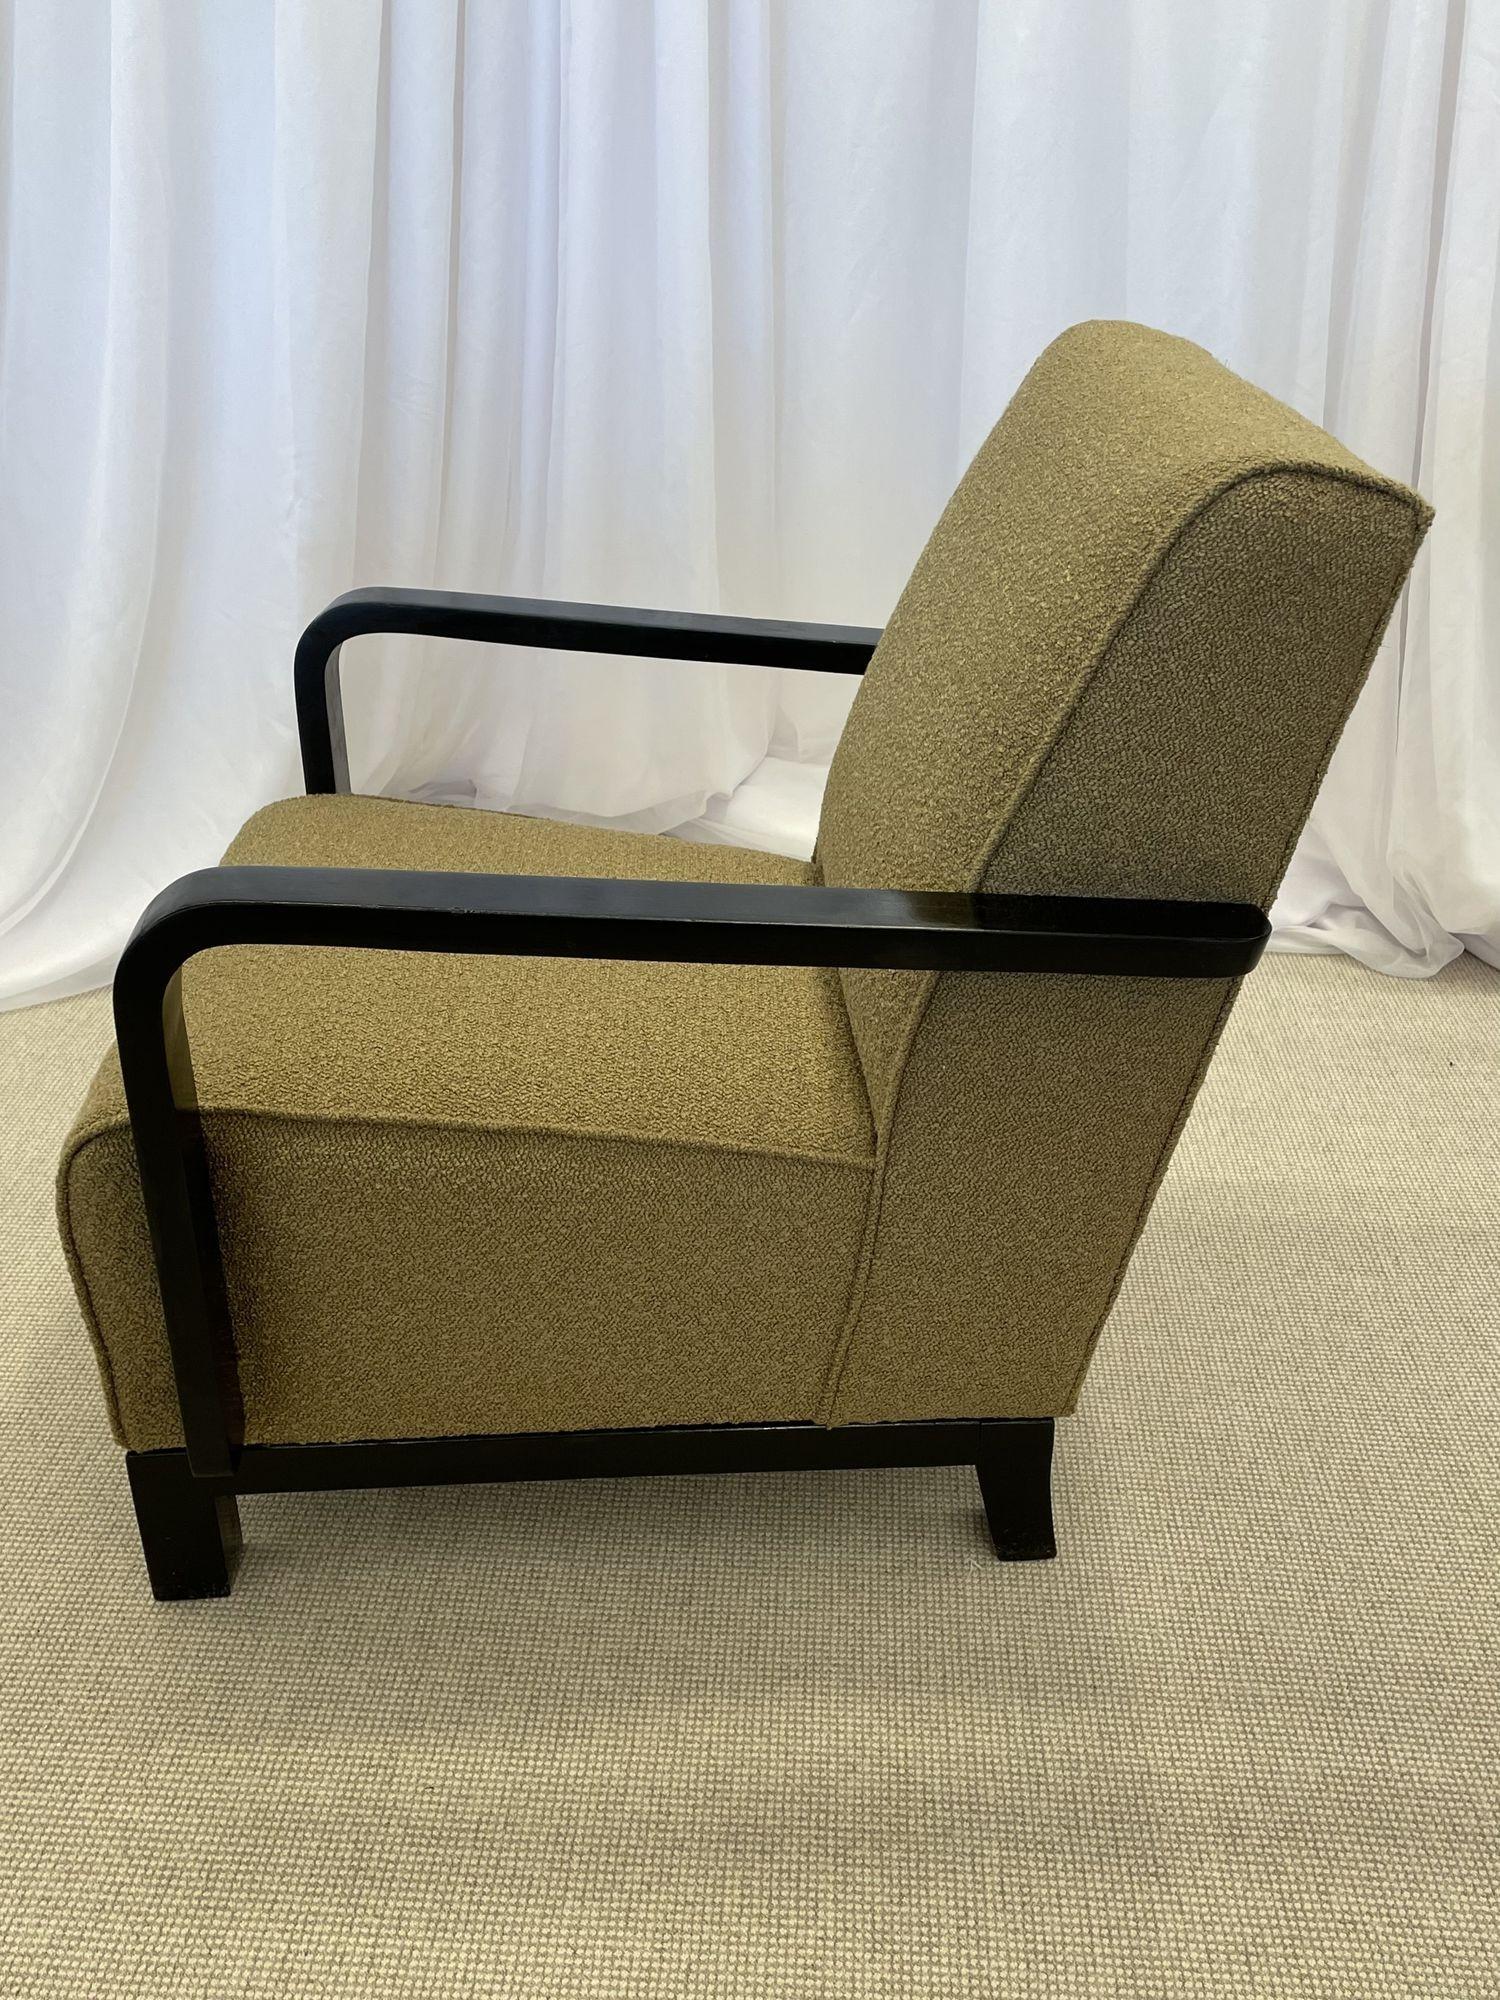 Paar Vintage Art Deco Lounge / Sessel, Ebenholz, Boucle, Schweden, 1940er Jahre
 
Ein Paar schicke Lounge- oder Sessel im Art-Deco-Stil, neu gepolstert mit braunem Noppenbouquet. Jeder Stuhl wird von einem organisch geformten Ebenholzrahmen